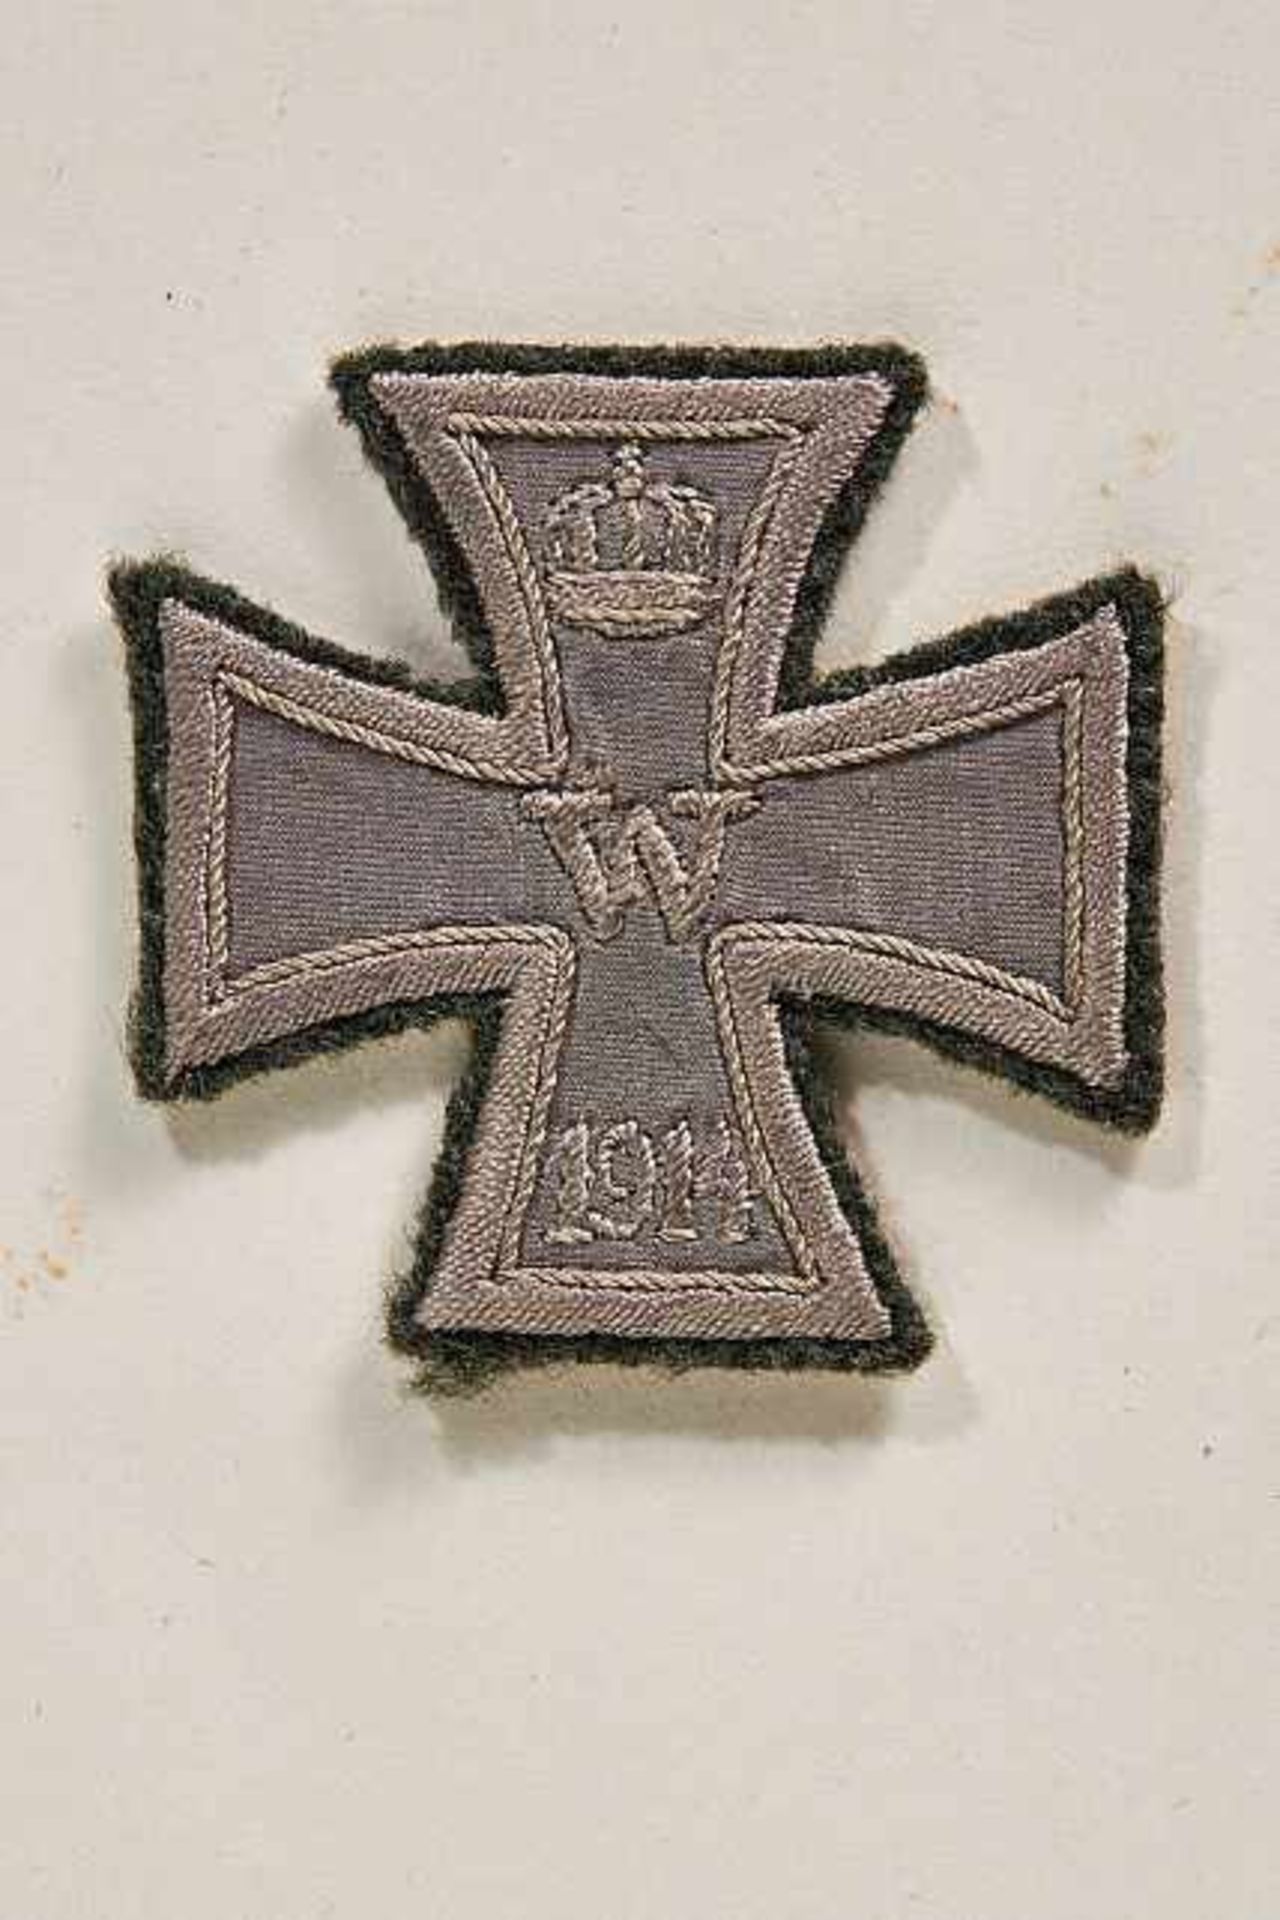 Orden & Ehrenzeichen Deutschland - Preußen : Cloth 1914 Iron Cross 1st Class.Rare cloth 1914 Iron